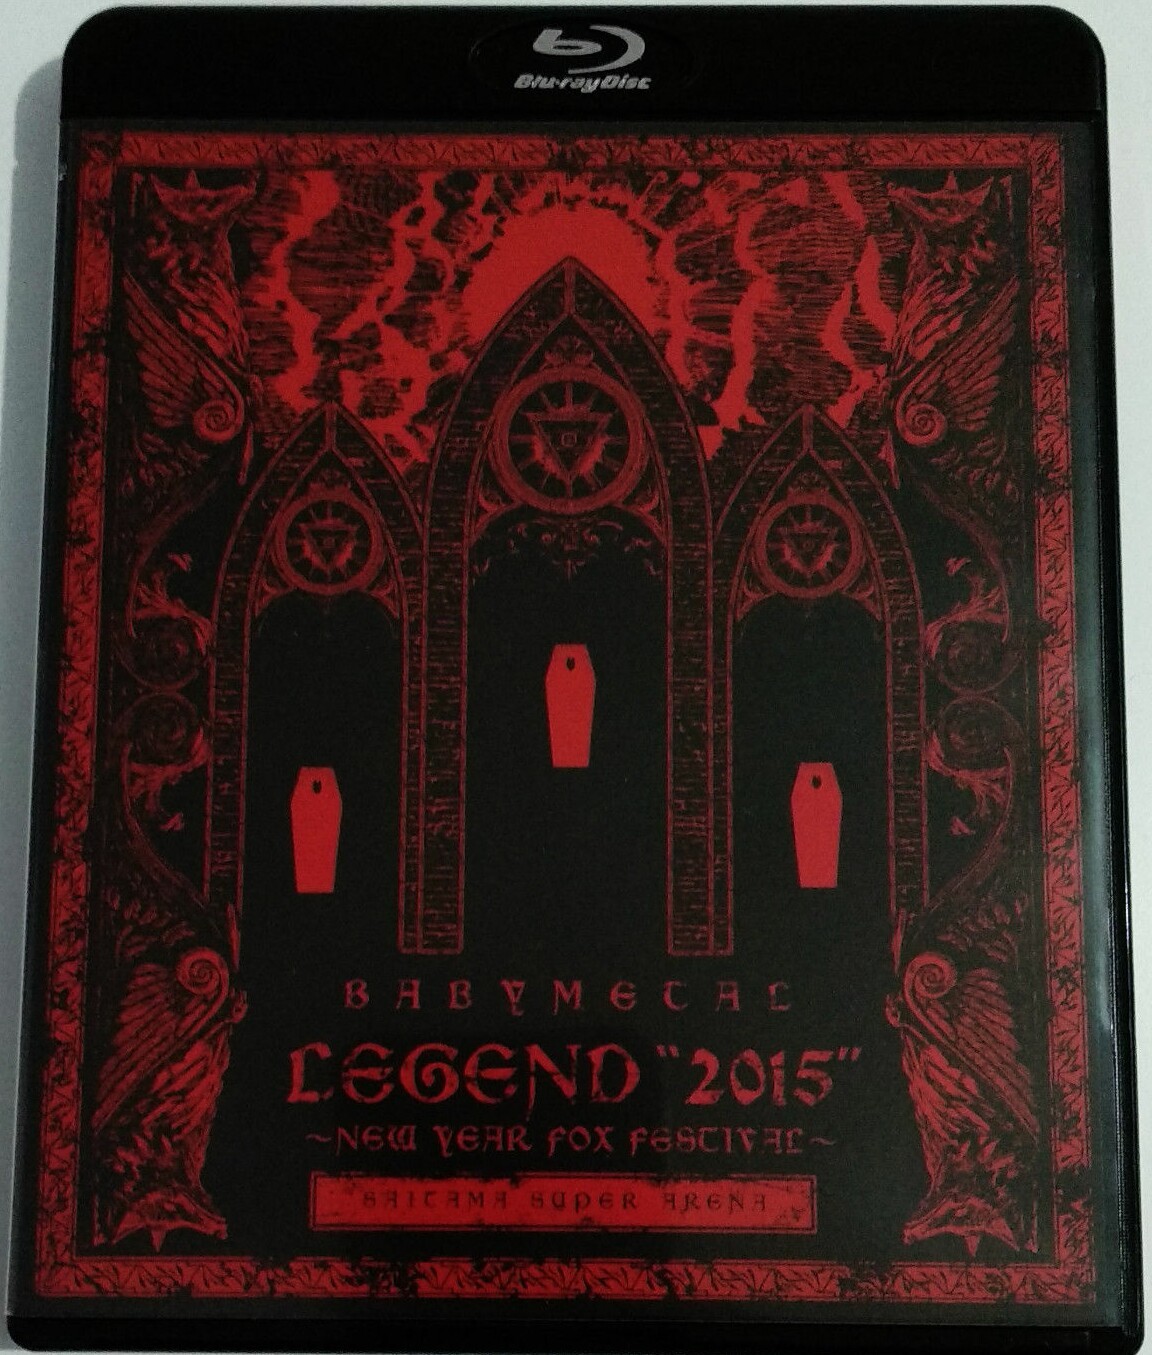 BABYMETAL: Legend 2015 - New Year Fox Festival Blu-ray (Limited